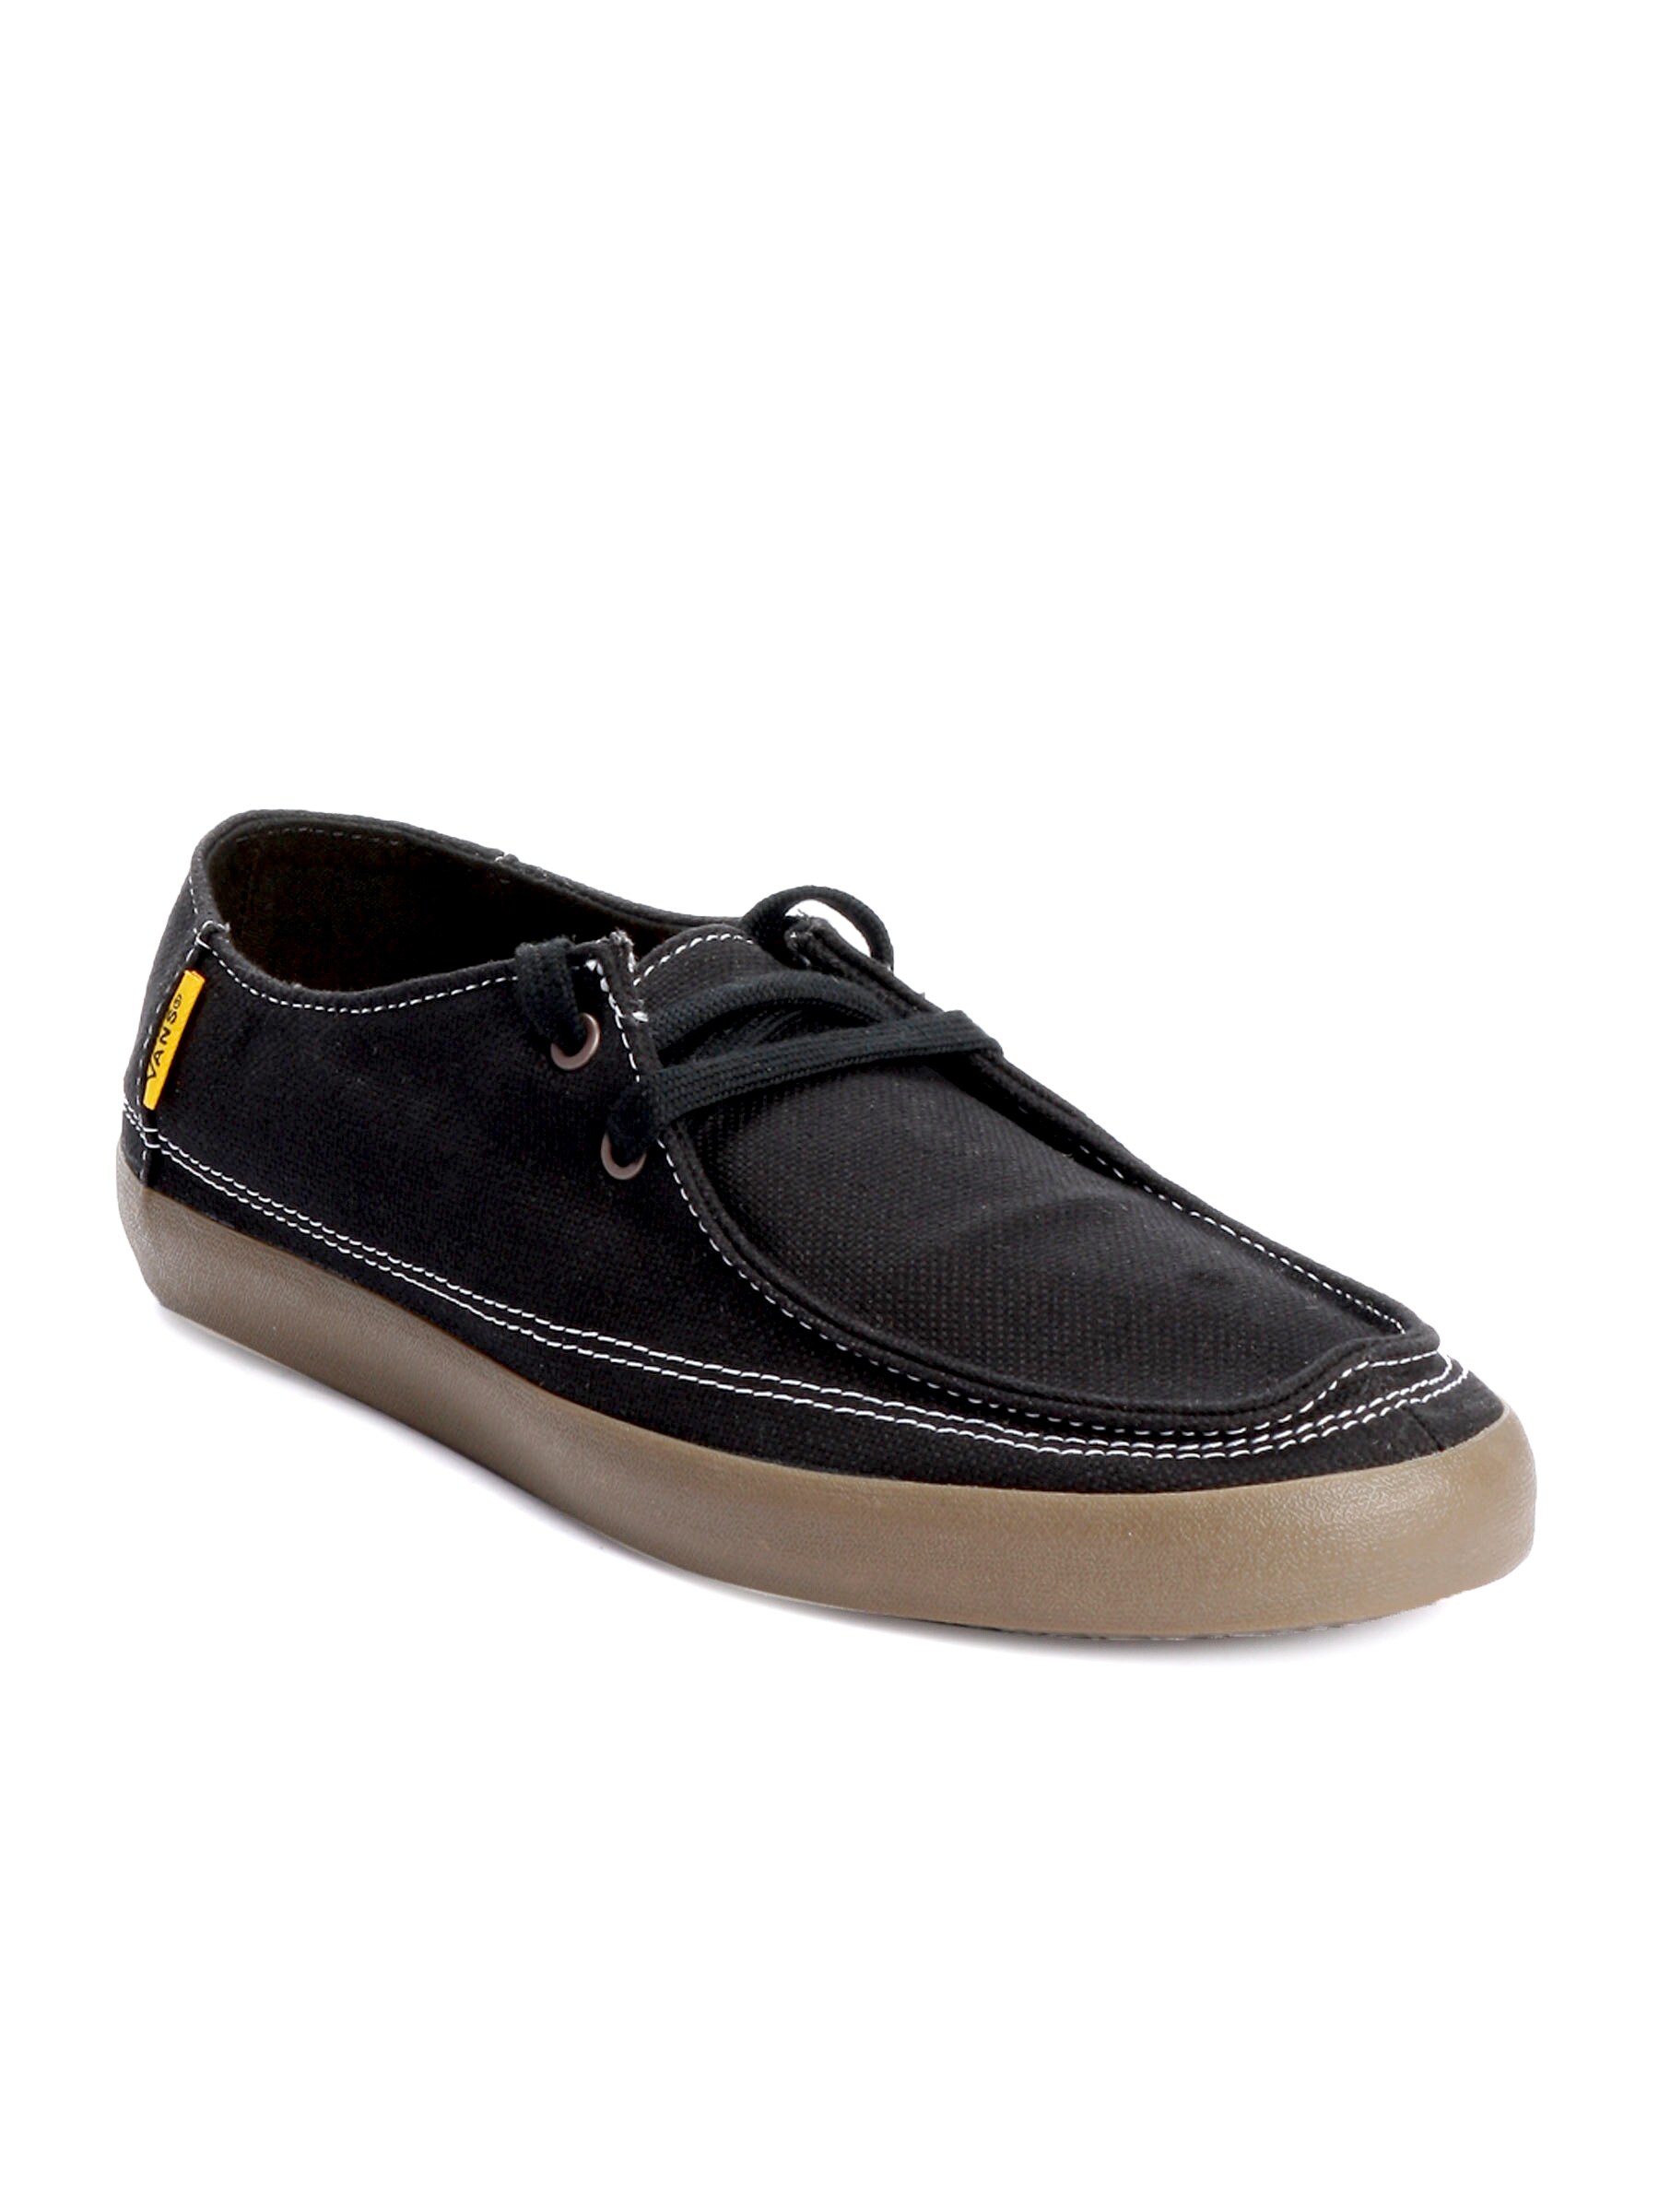 Vans Men Rata Vulc Black Casual Shoes